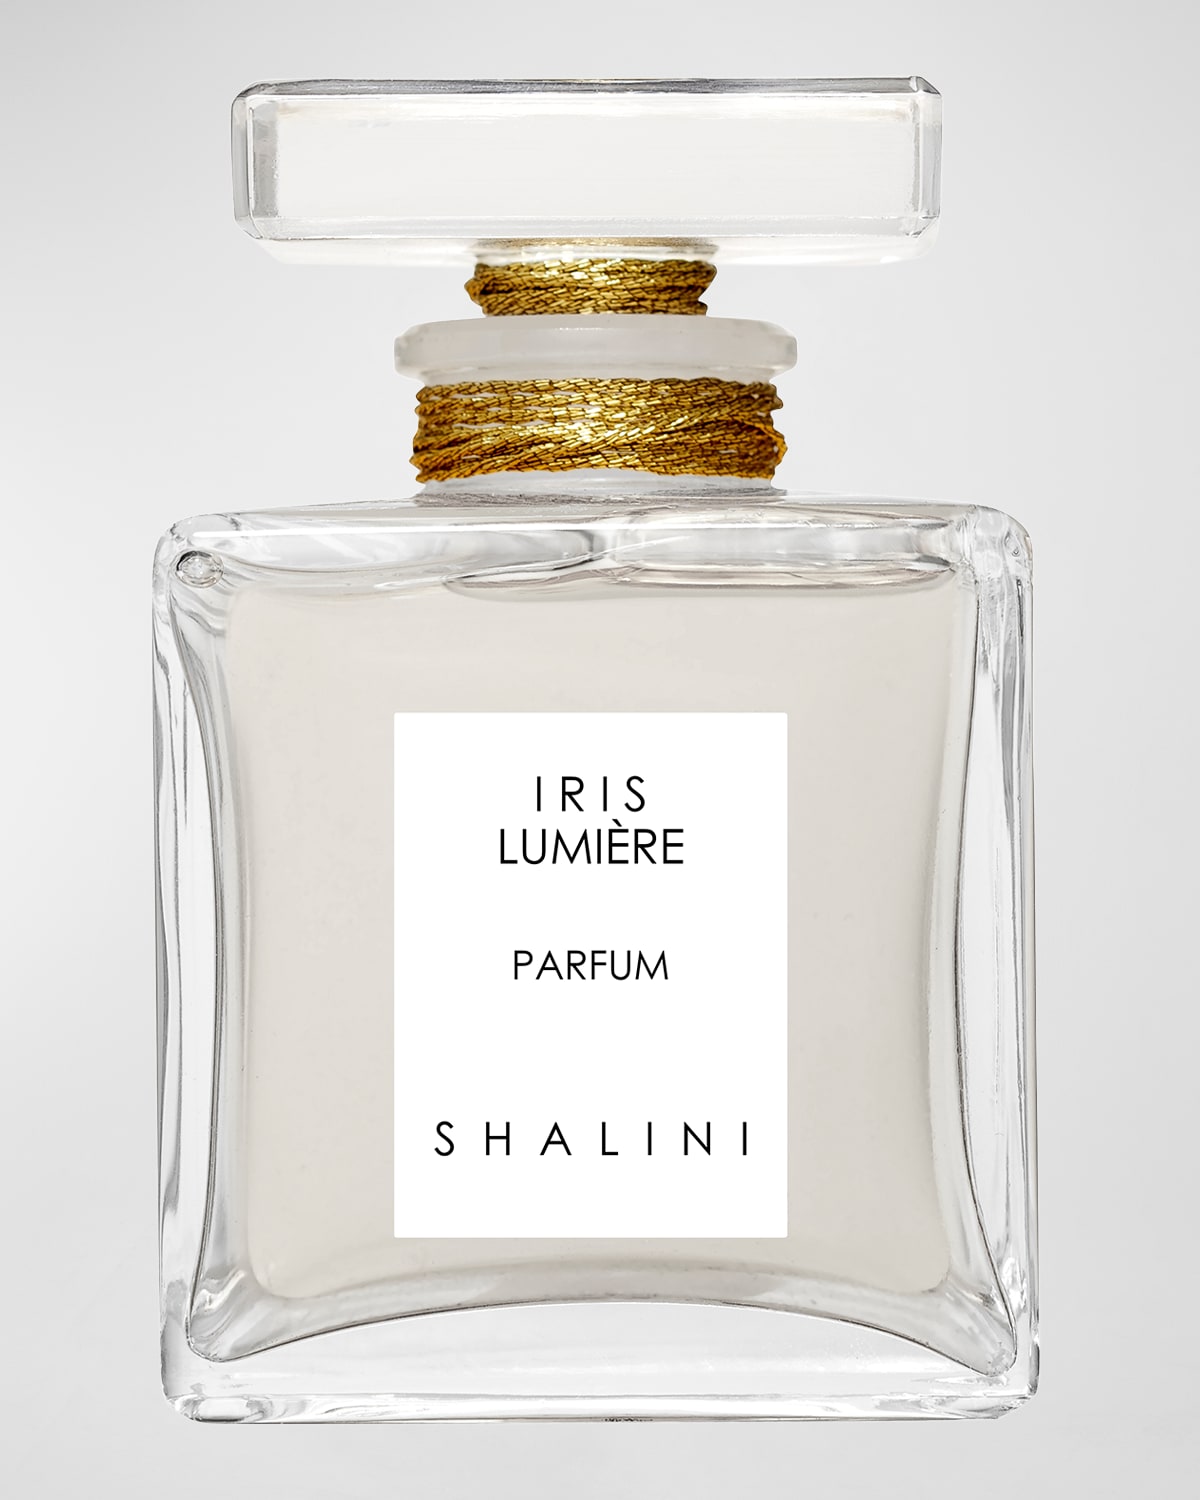 Iris Lumiere Parfum in Cubique Glass Bottle w/ Glass Atomizer, 1.7 oz.